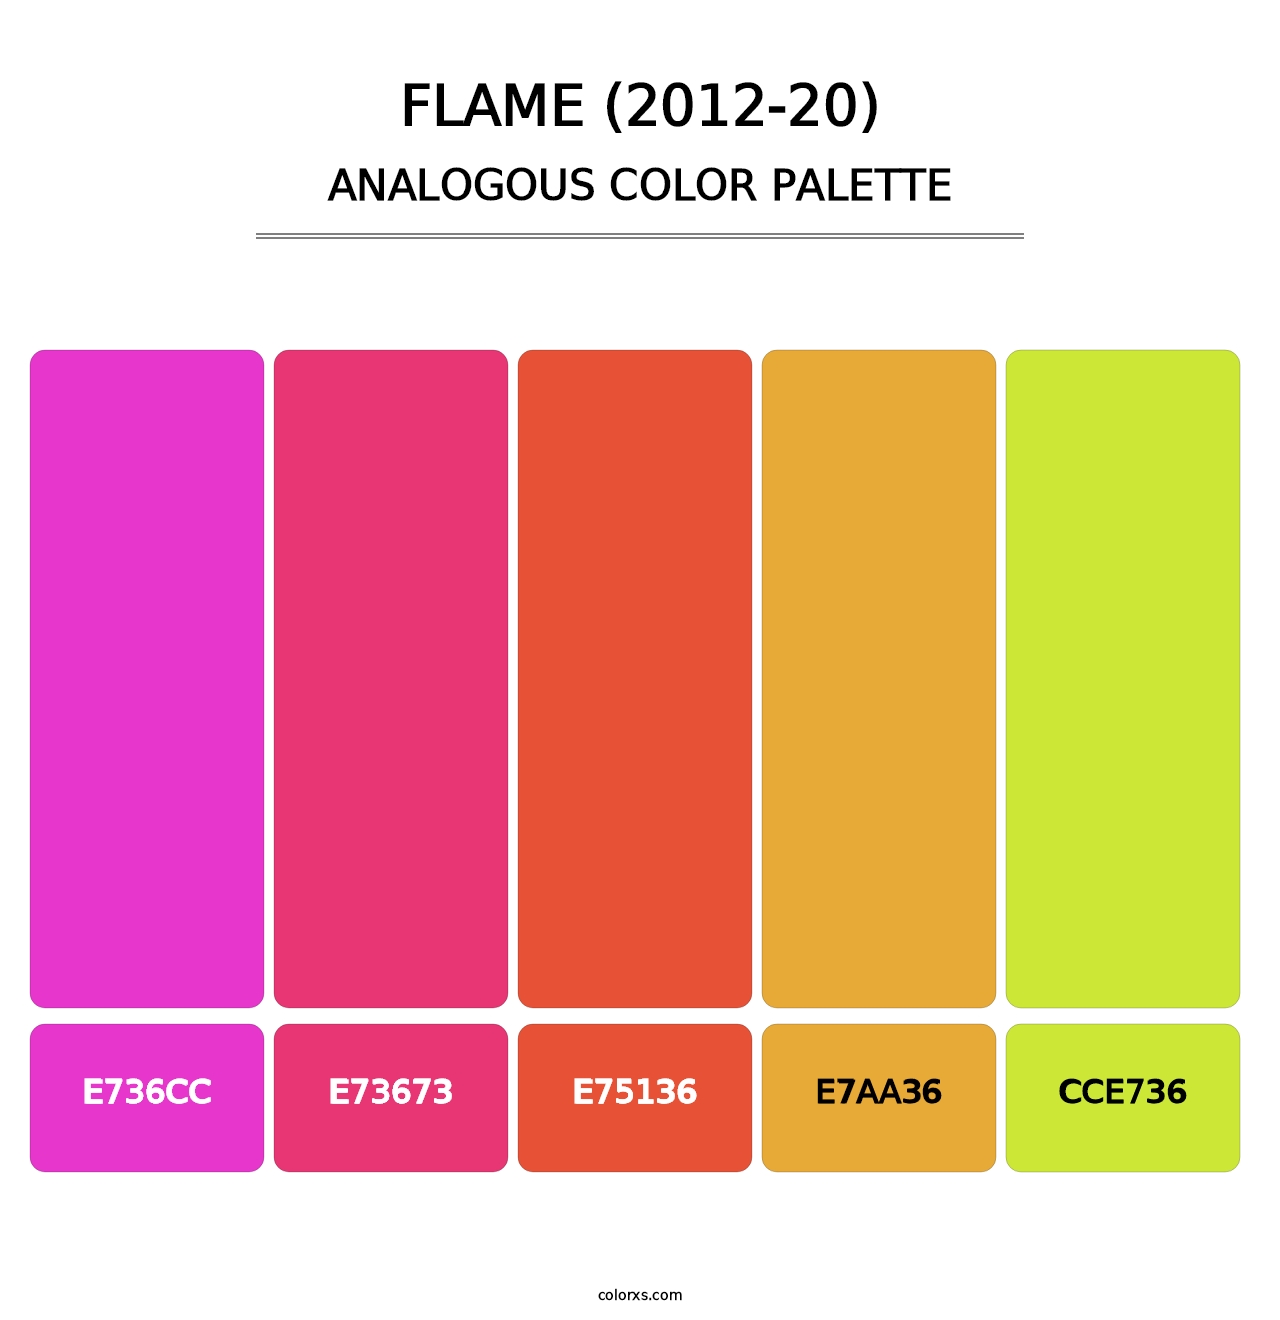 Flame (2012-20) - Analogous Color Palette